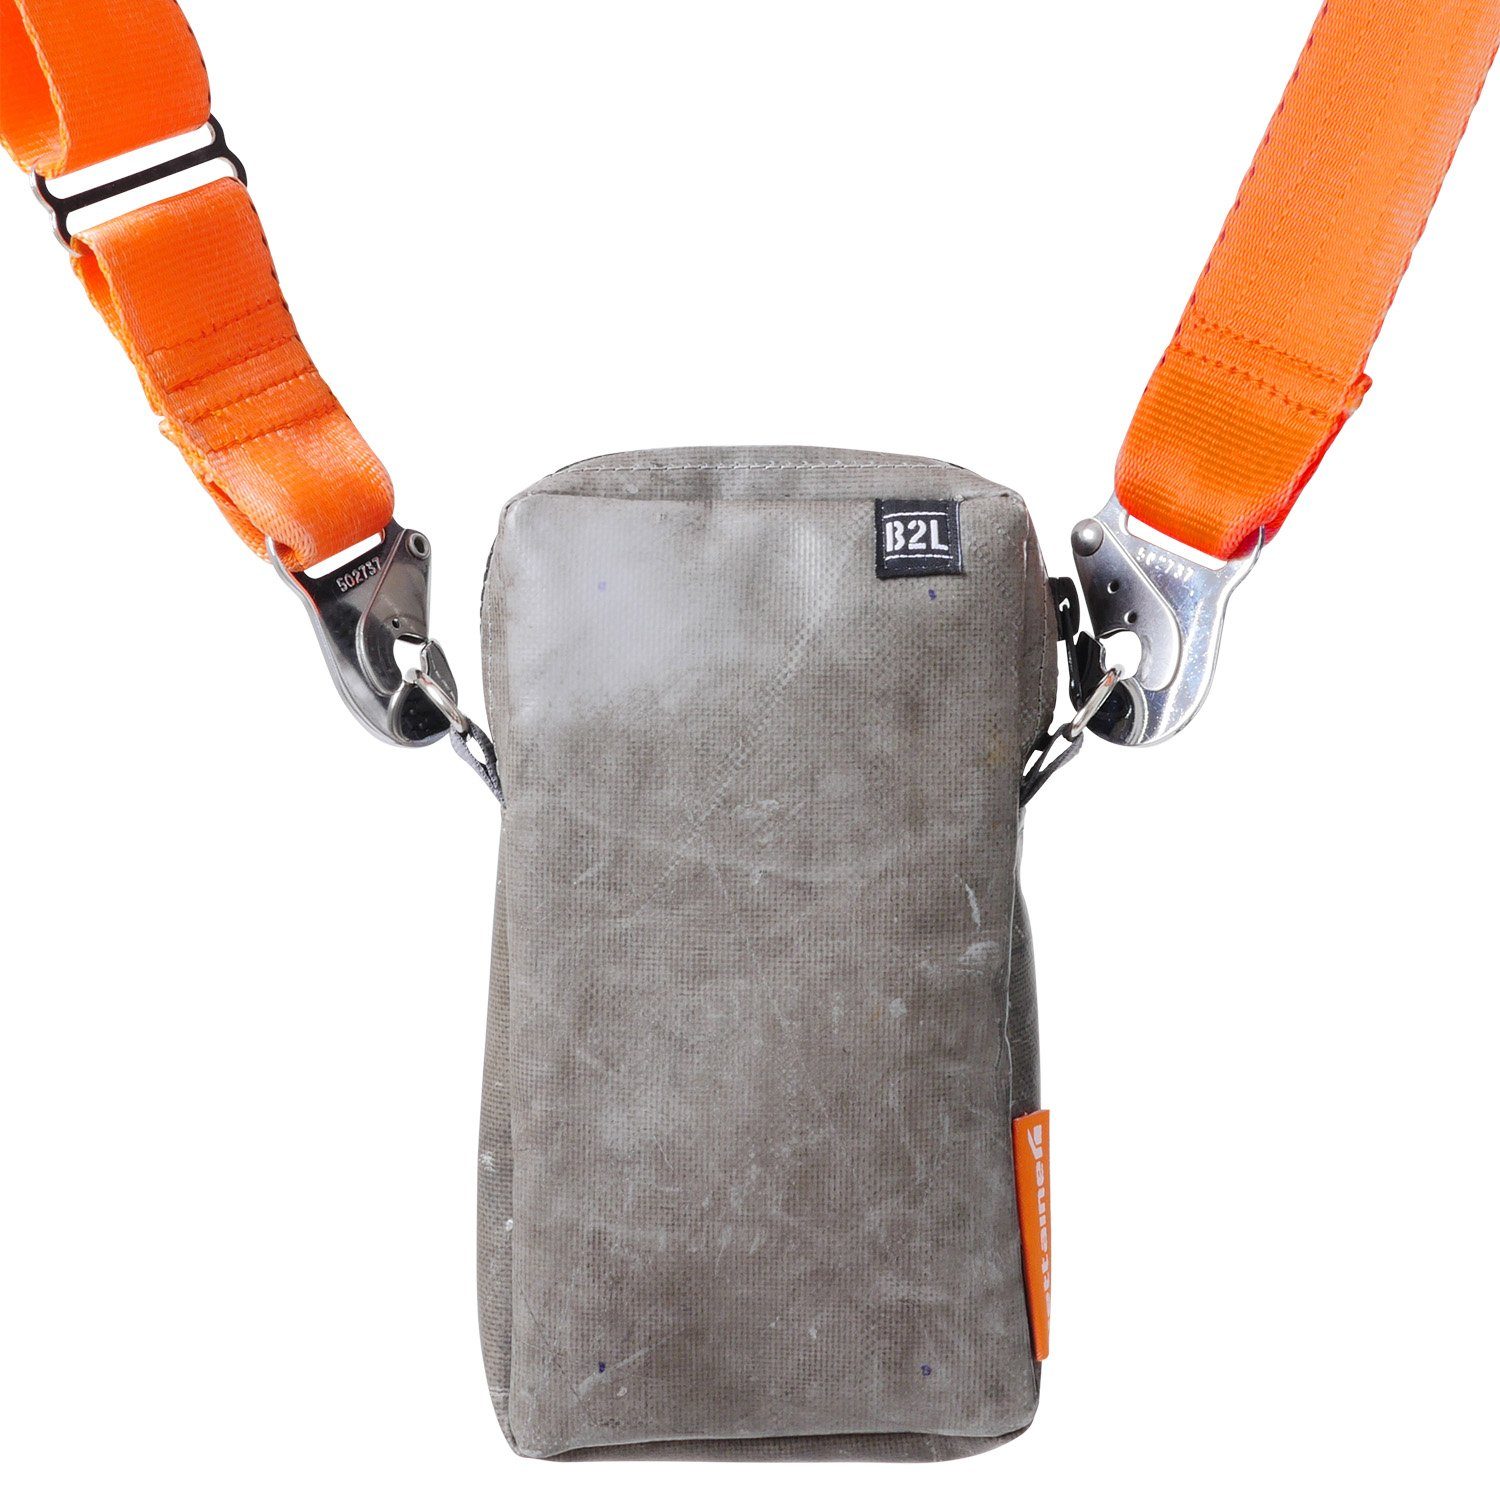 praktischen Design im Umhängetasche Life to ULD Crossover Jettainer Bag, Bag